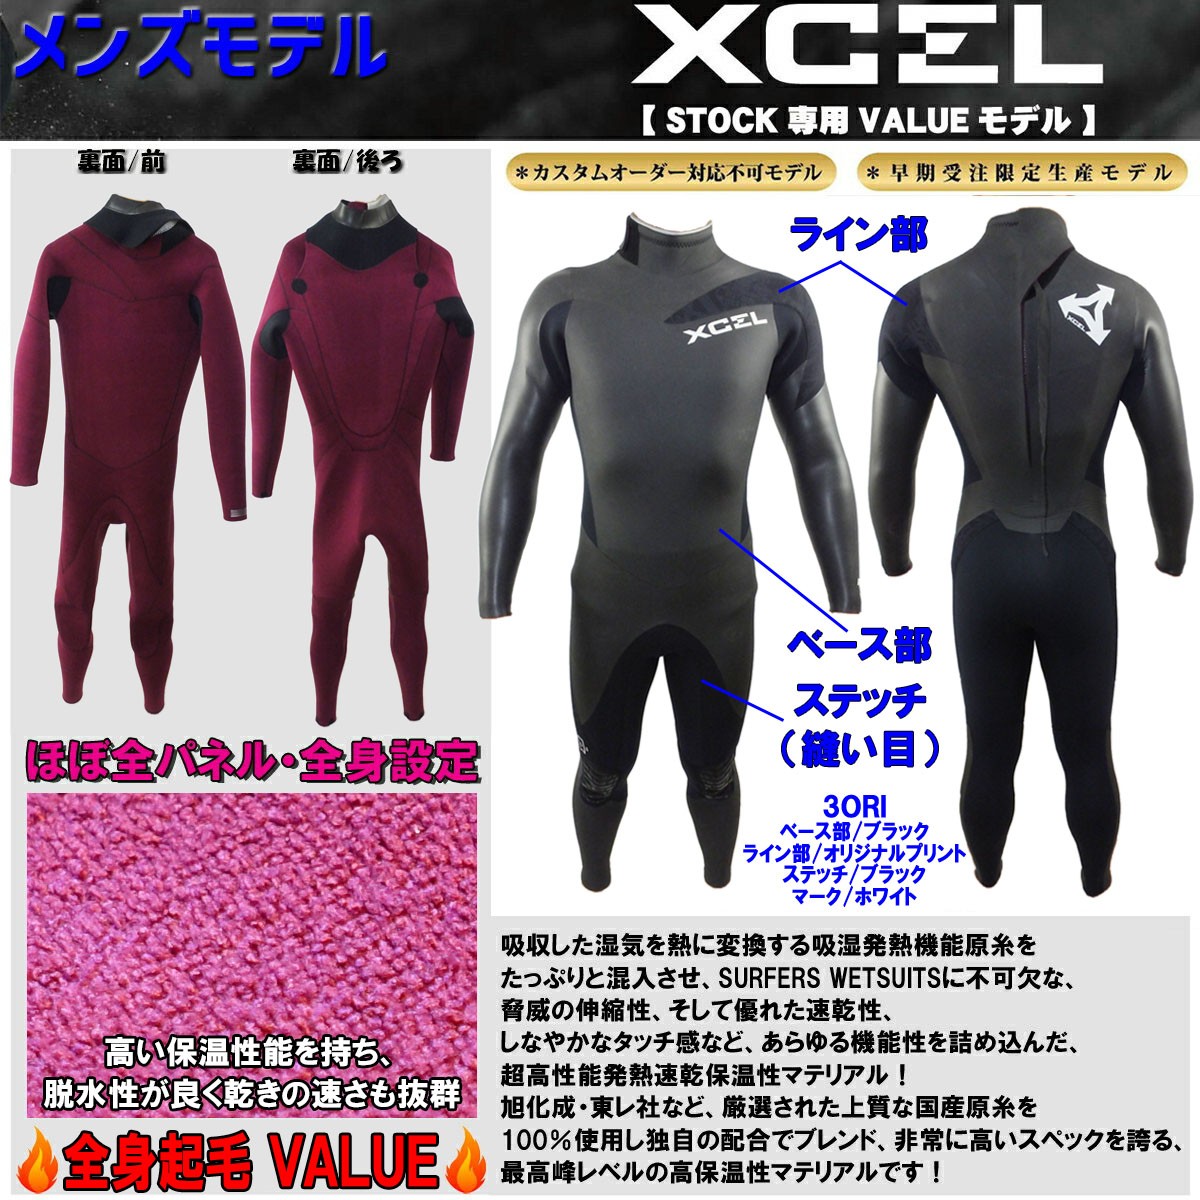 2018年/2019年 XCEL エクセル ウェットスーツ セミドライ メンズ ウエットスーツ バリュー バックジッパー 品番 AI268-611  日本正規品